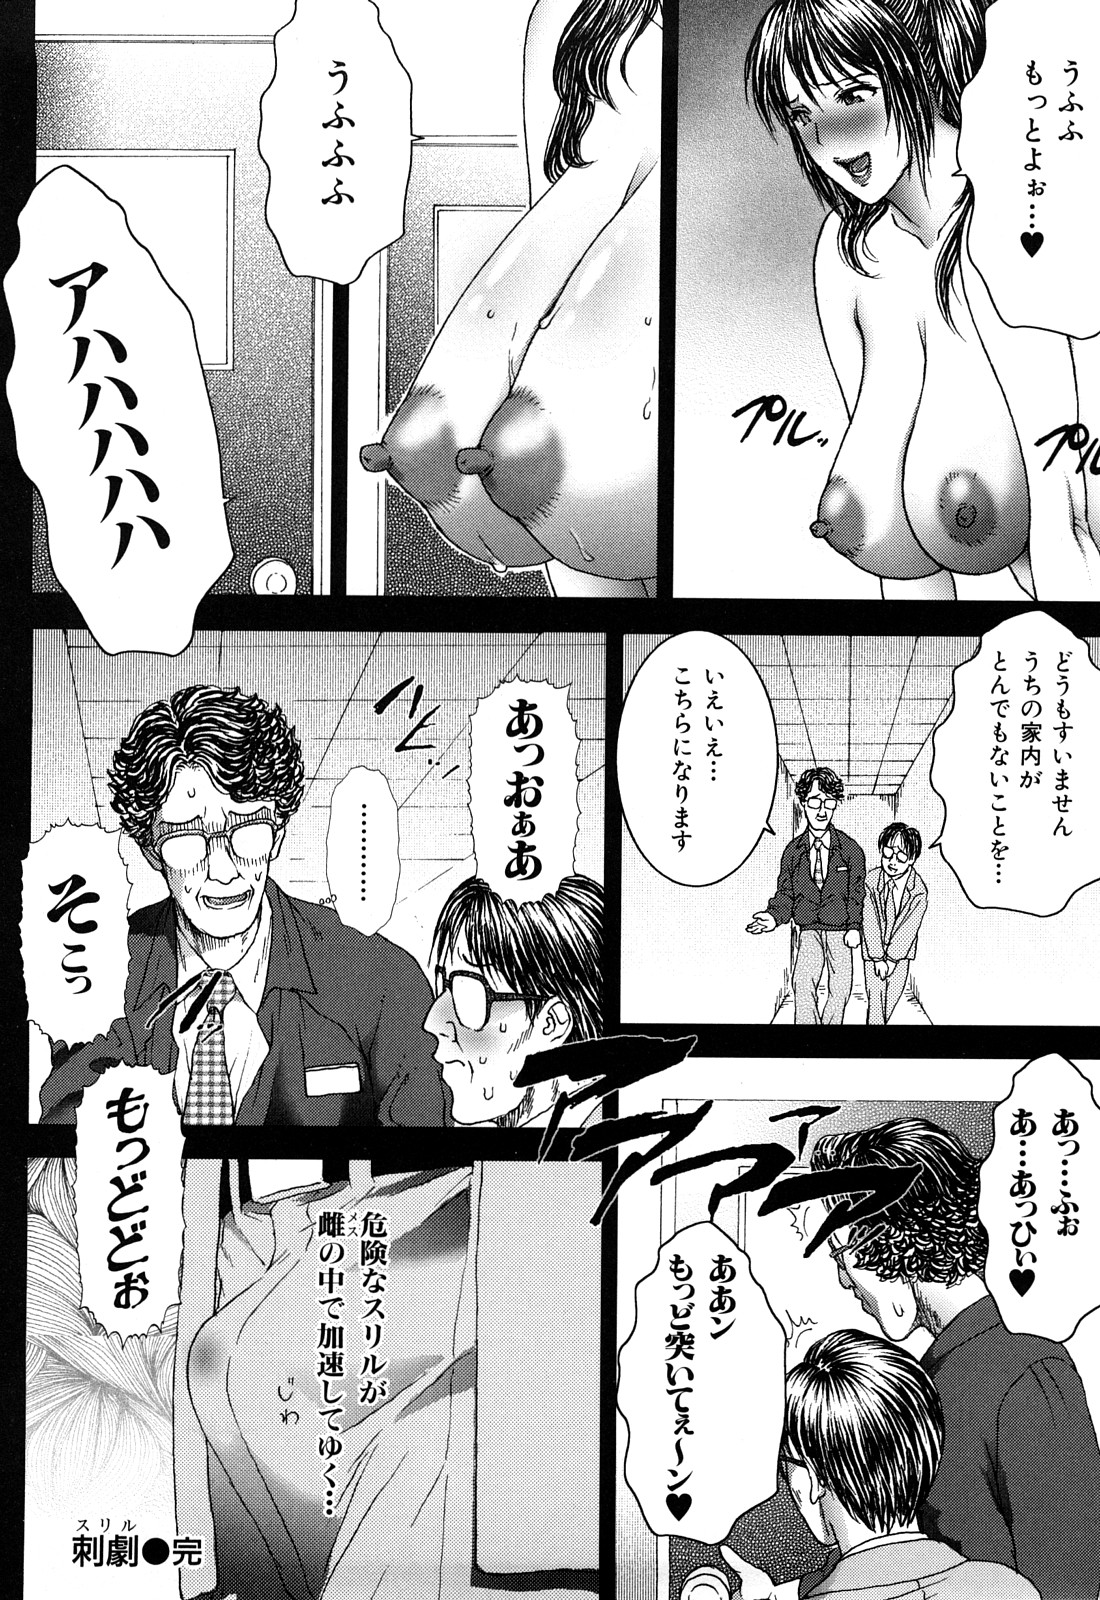 [EXTREME] Tsuma No Shizuku ~Nikuyome Miyuki 29 sai~ page 28 full